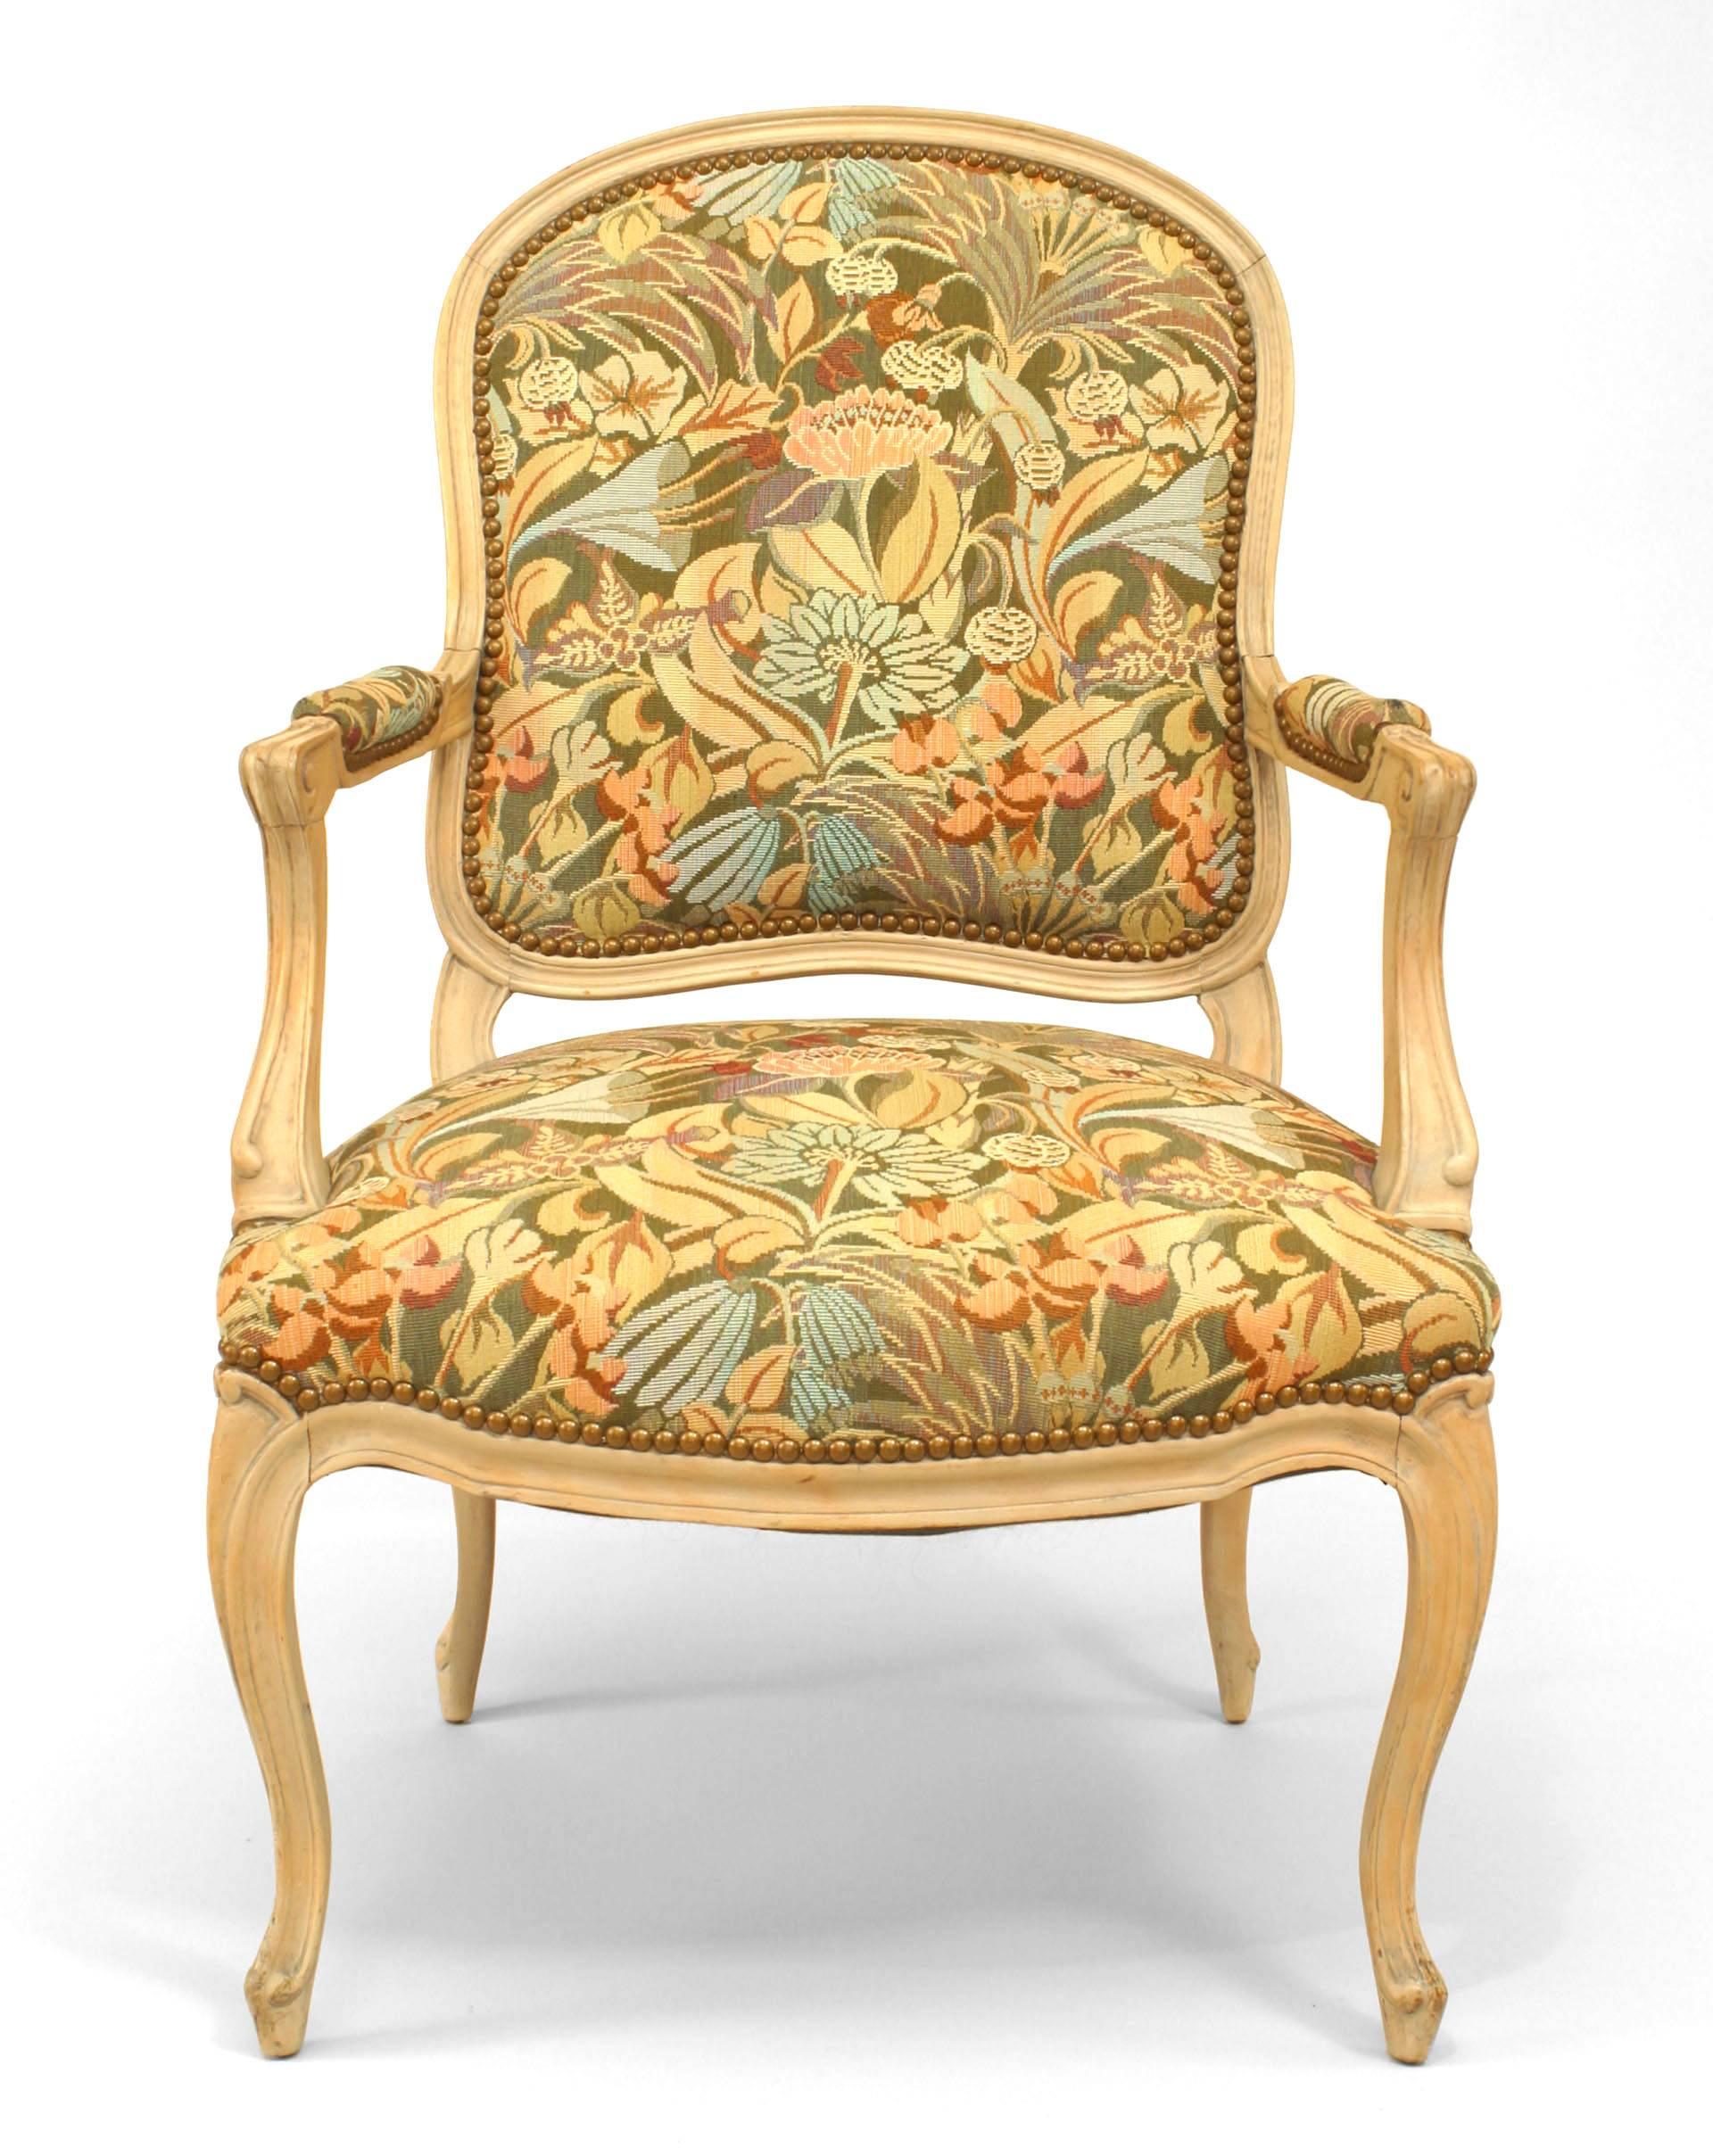 Paar französische Sessel im Stil Louis XV (20. Jh.), gebleicht, offen, mit gepolstertem Sitz und Rückenlehne im Gobelinstil
